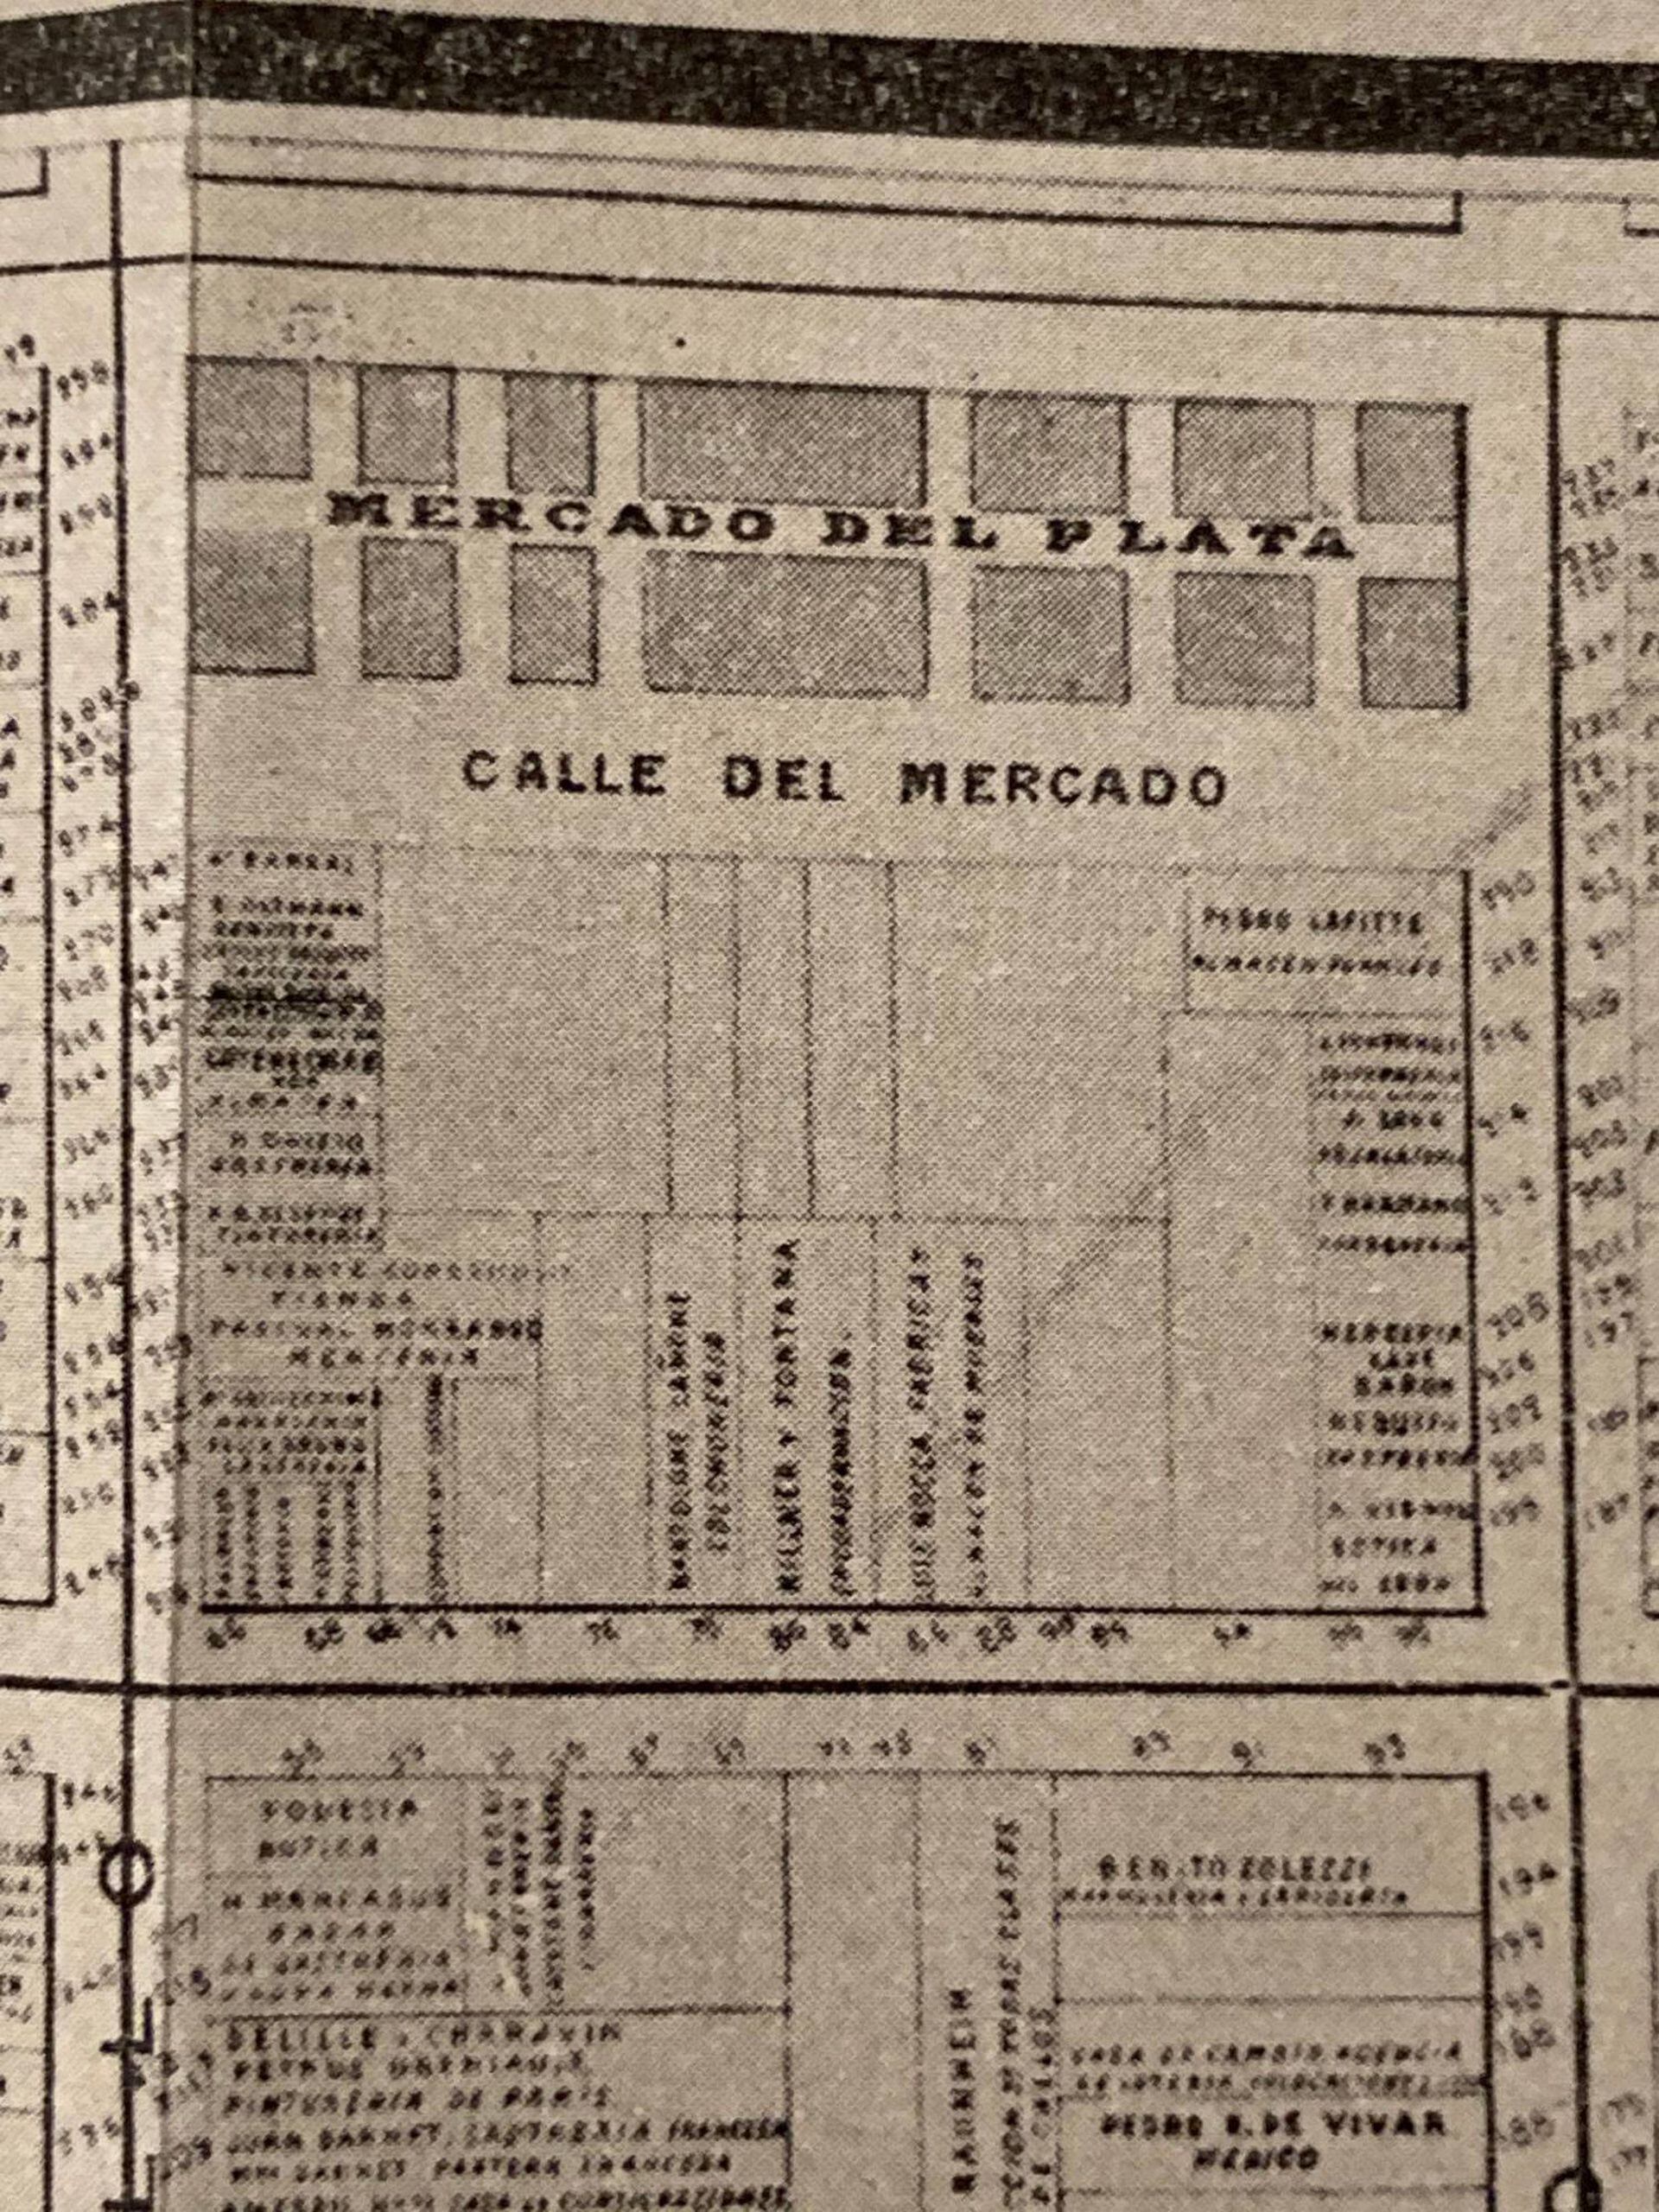 Un antiguo plano donde el pasaje se menciona como Calle del Mercado, en referencia al Mercado del Plata.